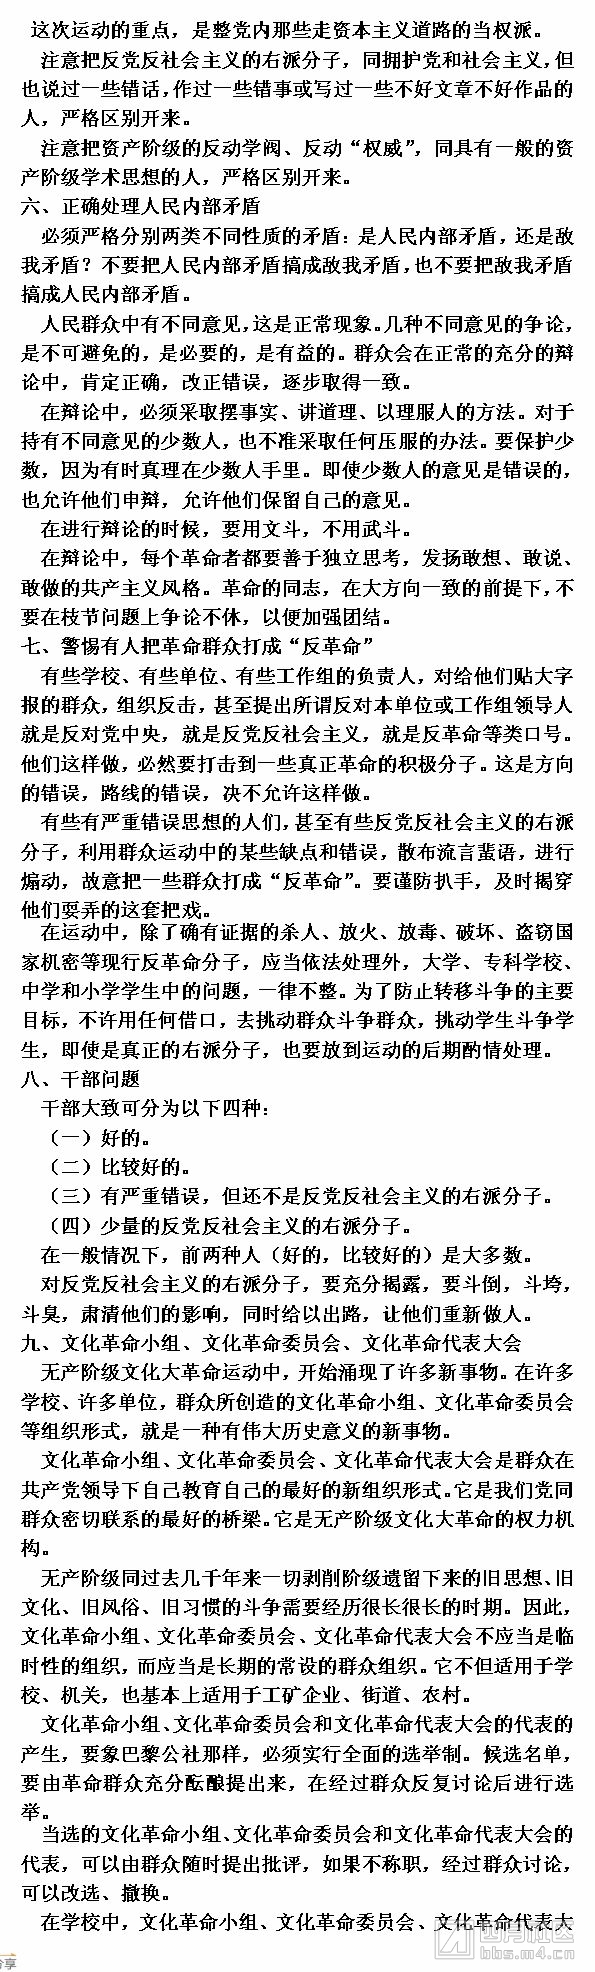 2中国共产党中央委员会关于无产阶级文化大革命的决定.jpg